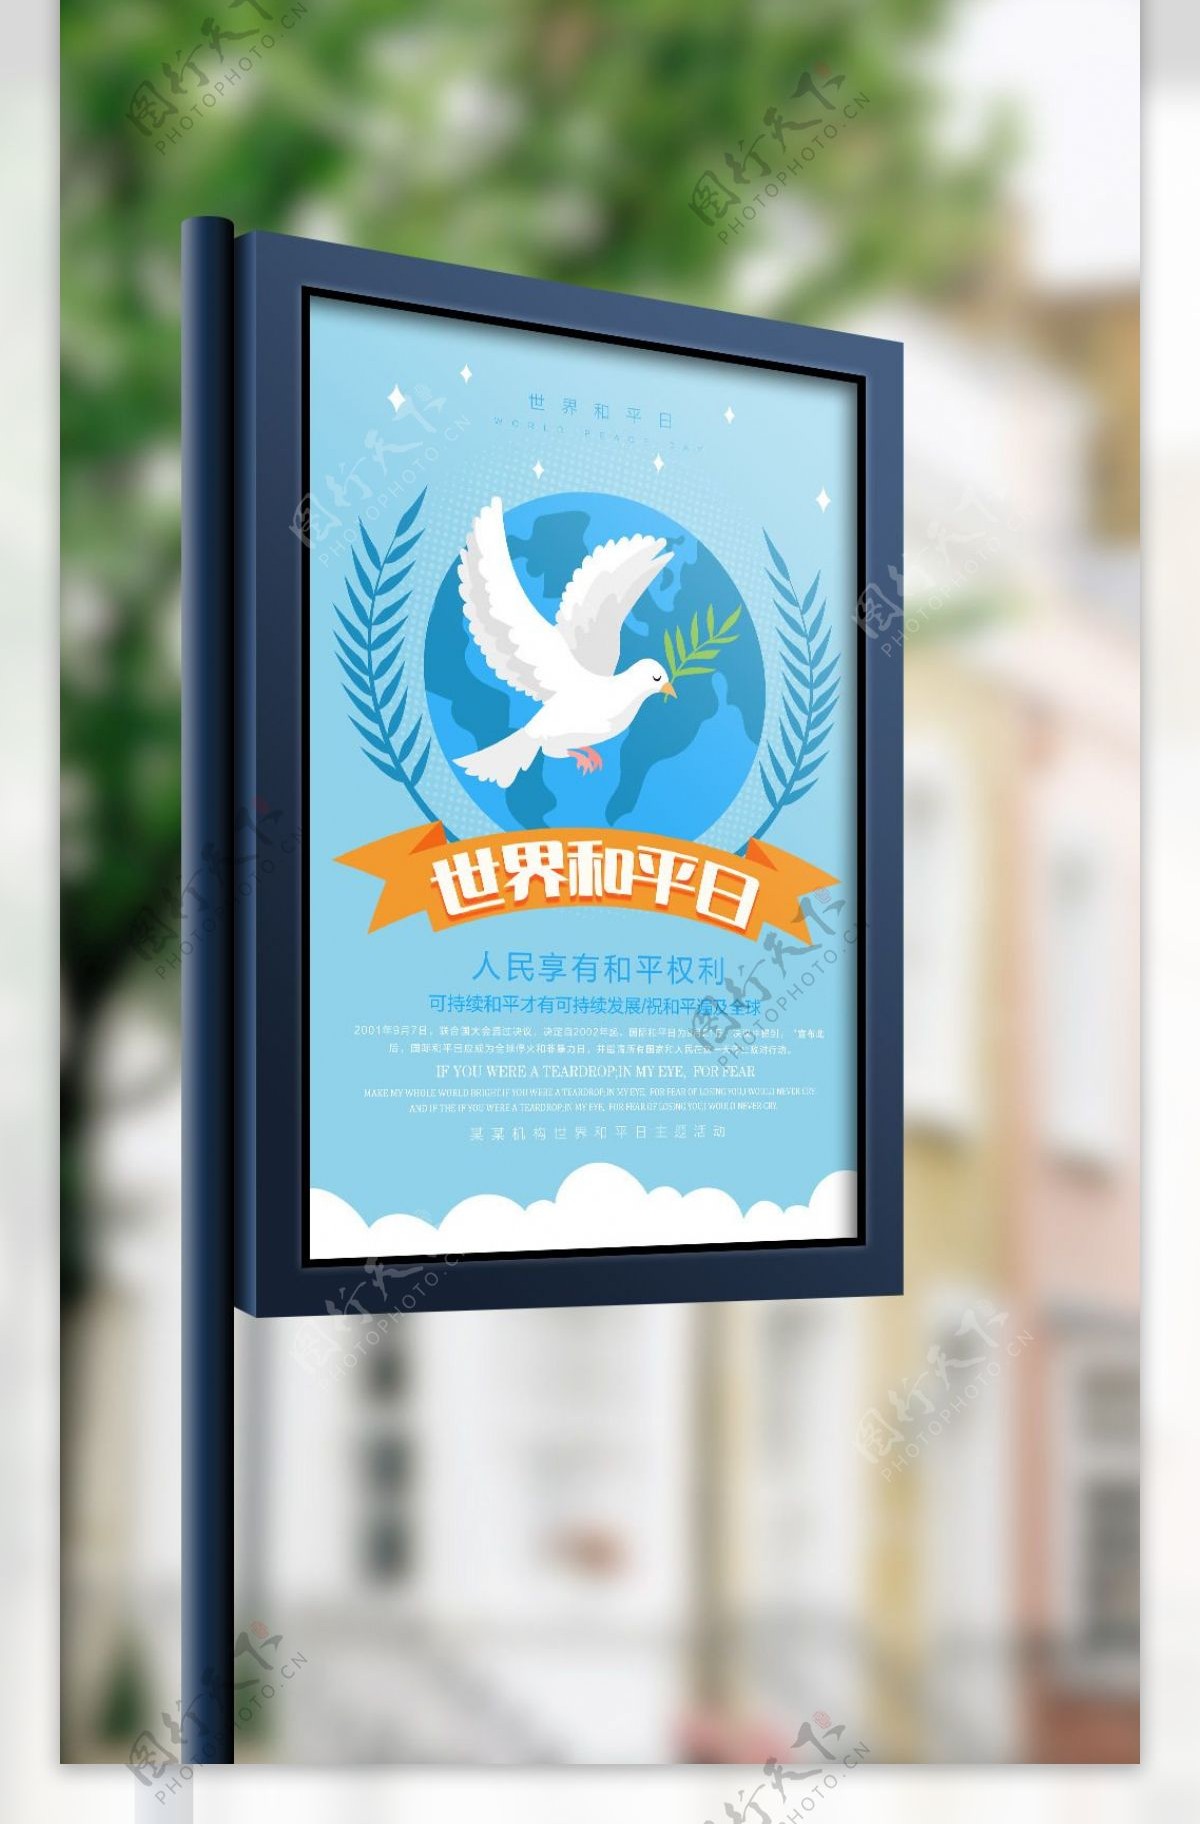 清新简约世界和平日宣传海报设计